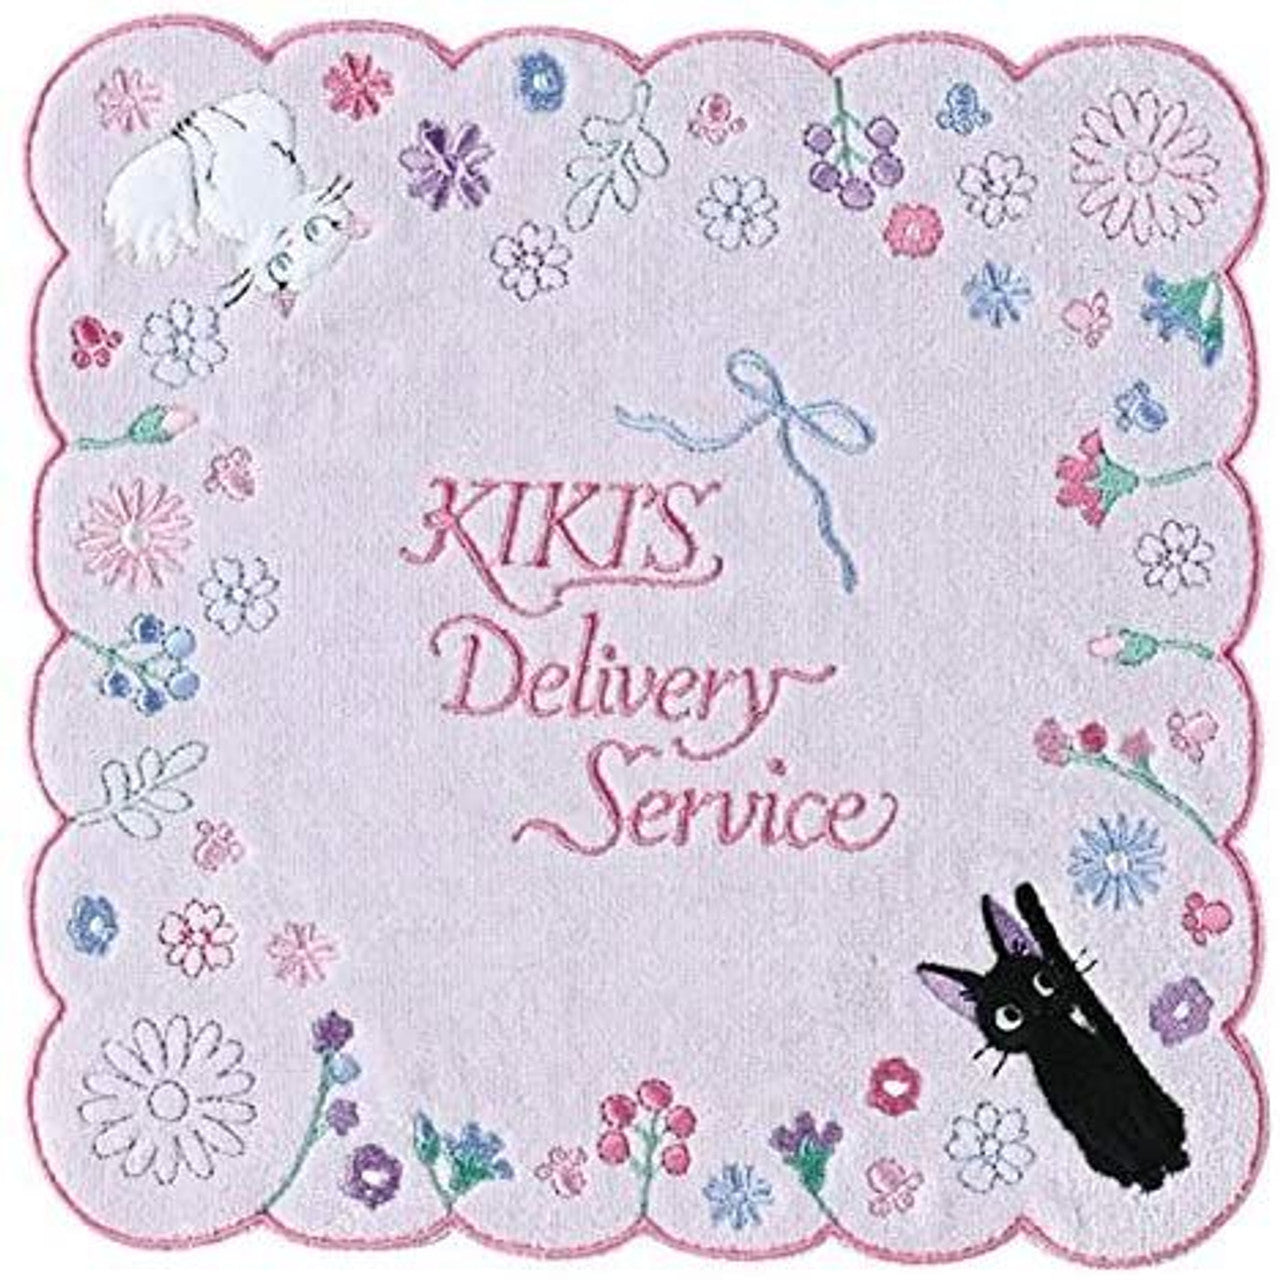 Kiki Delivery Service Mini-Handtuch 03